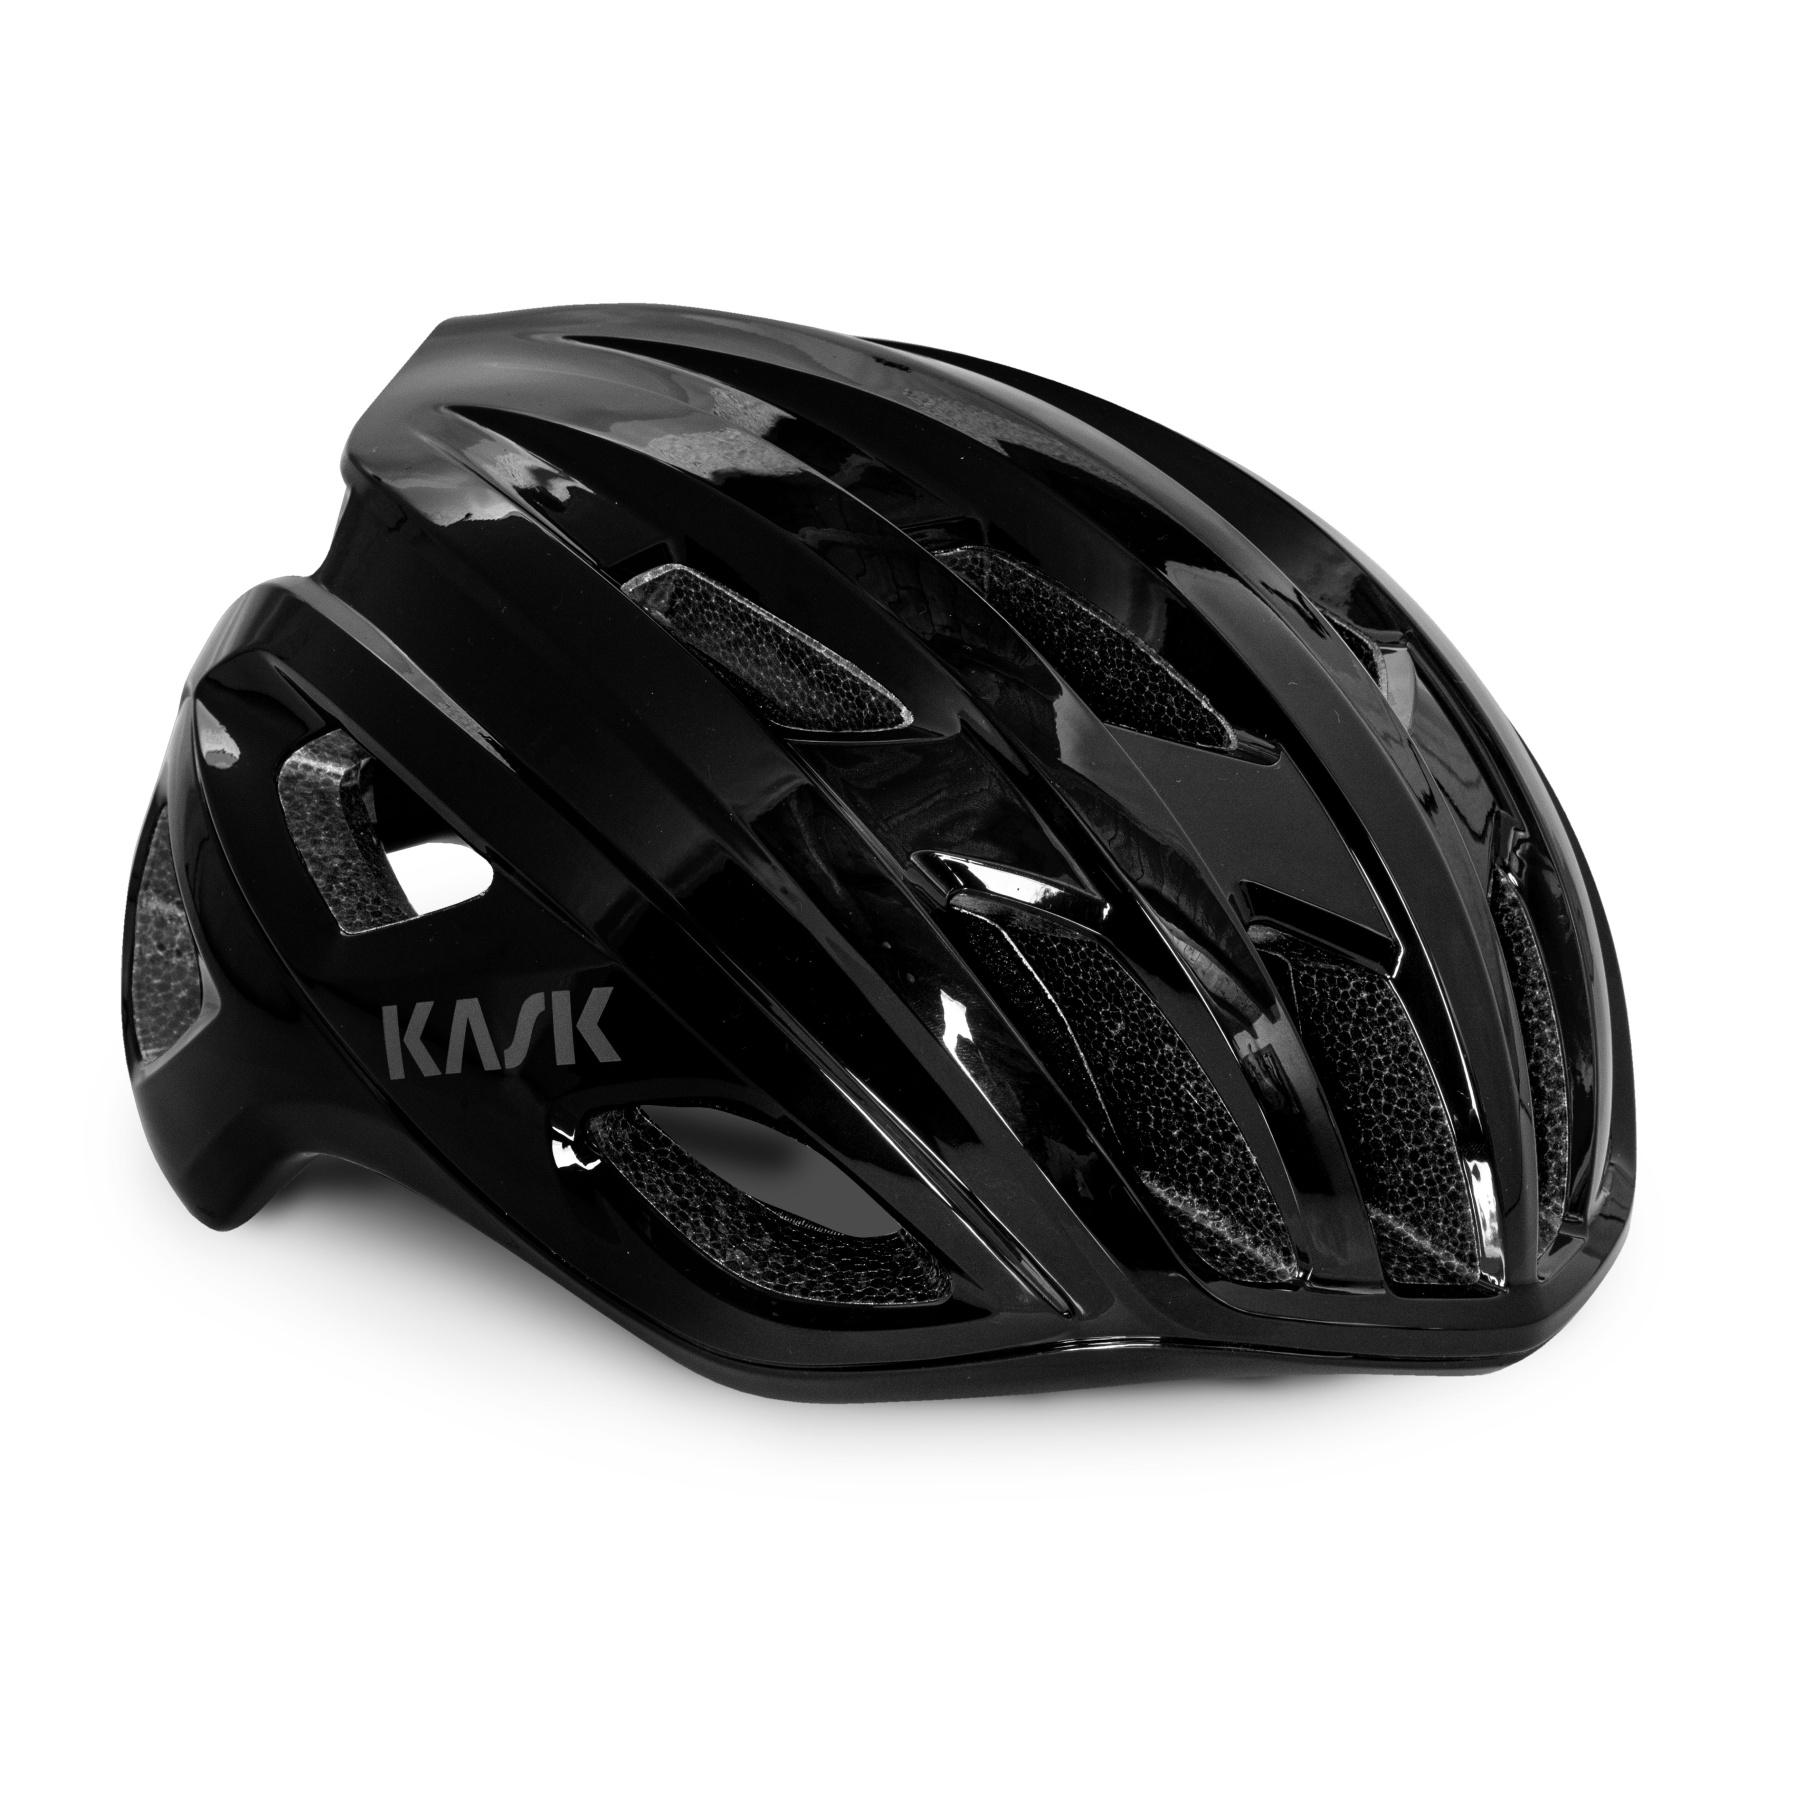 KASK - Bike Helmets for Road Bike, MTB & Lifestyle | BIKE24